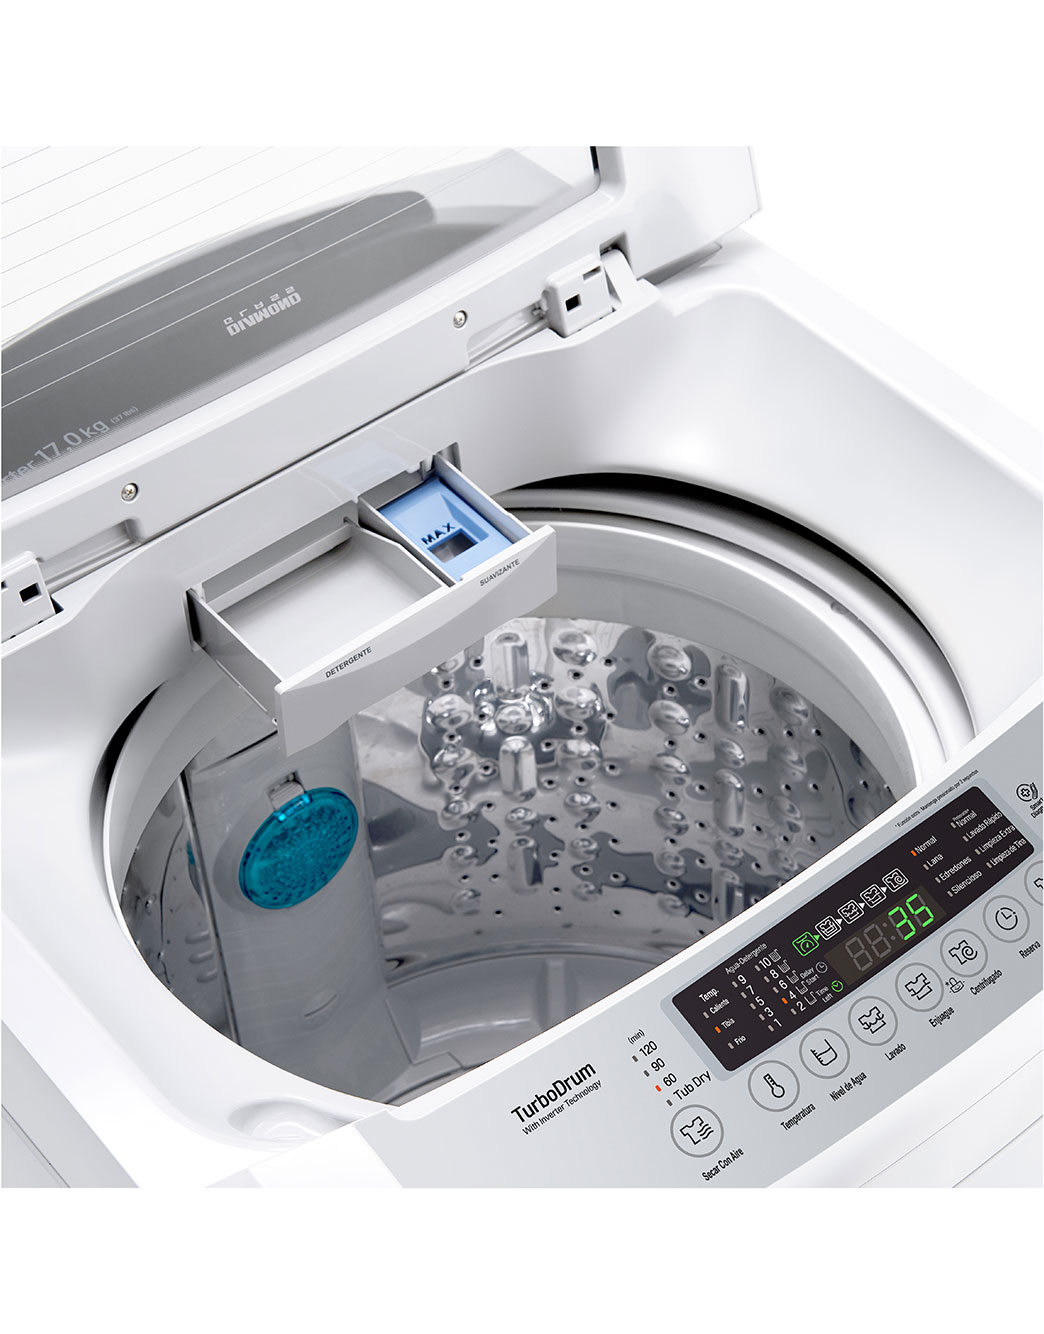 😍𝗟𝗔𝗩𝗔𝗗𝗢𝗥𝗔 𝗟𝗚 𝟭𝟳𝗞𝗚⁣ ⁣ ¡Una lavadora ideal para una gran  familia!⁣ ⁣ Cuentan con:⁣⁣ ⁣✔️Motor LG Smart Inverter. La tecnología Smart  Inverter…